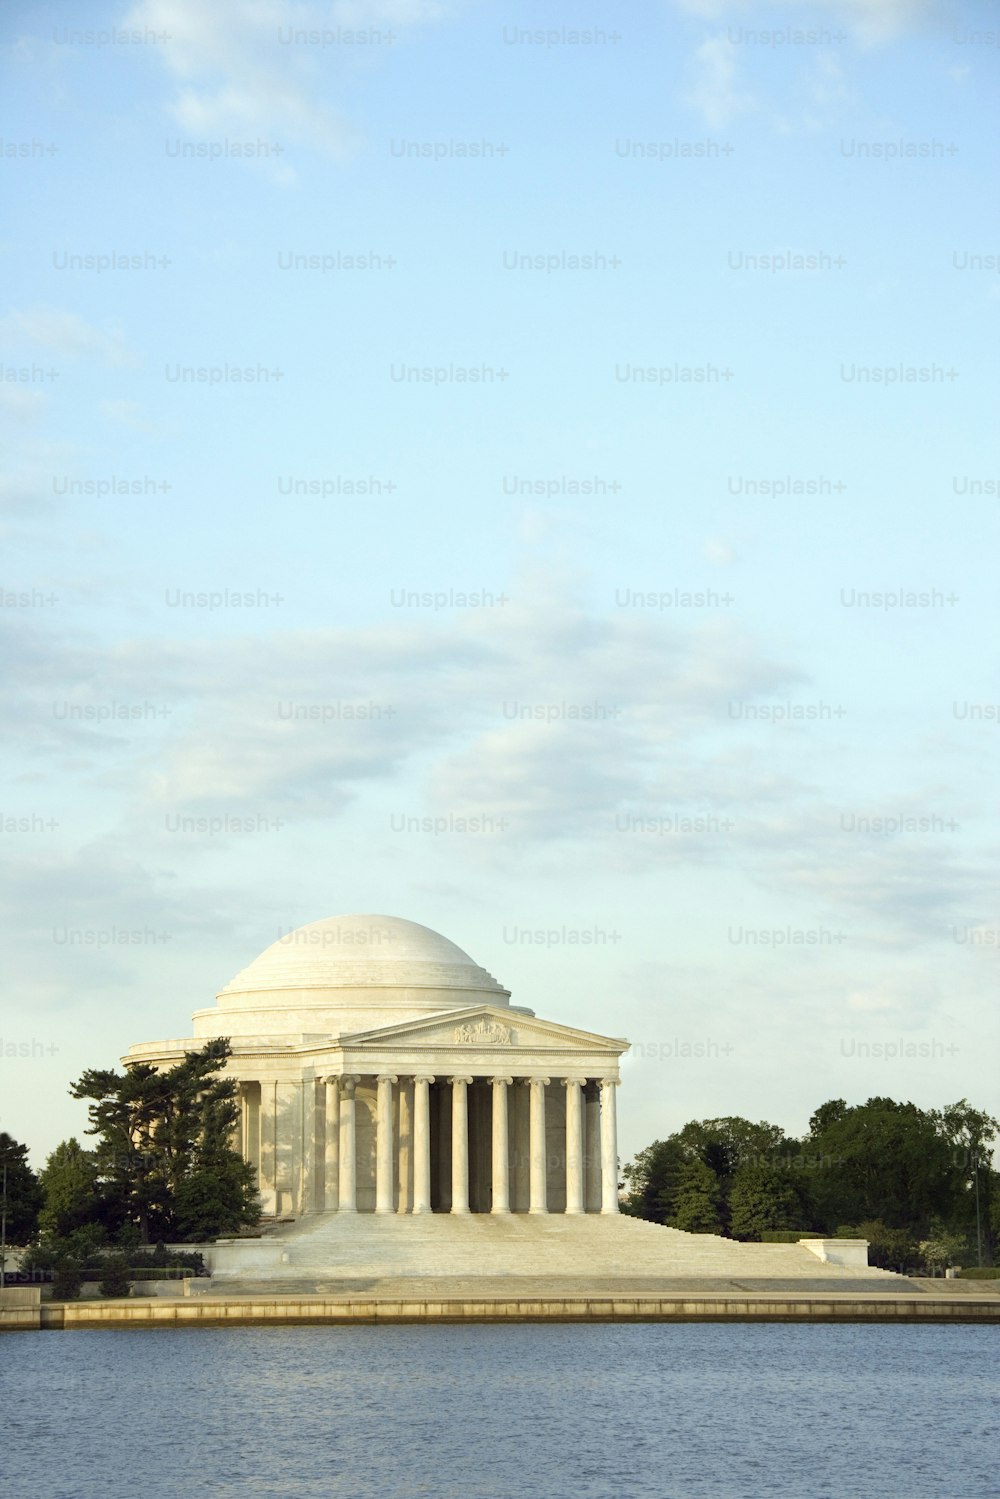 Una vista del Jefferson Memorial dall'altra parte dell'acqua